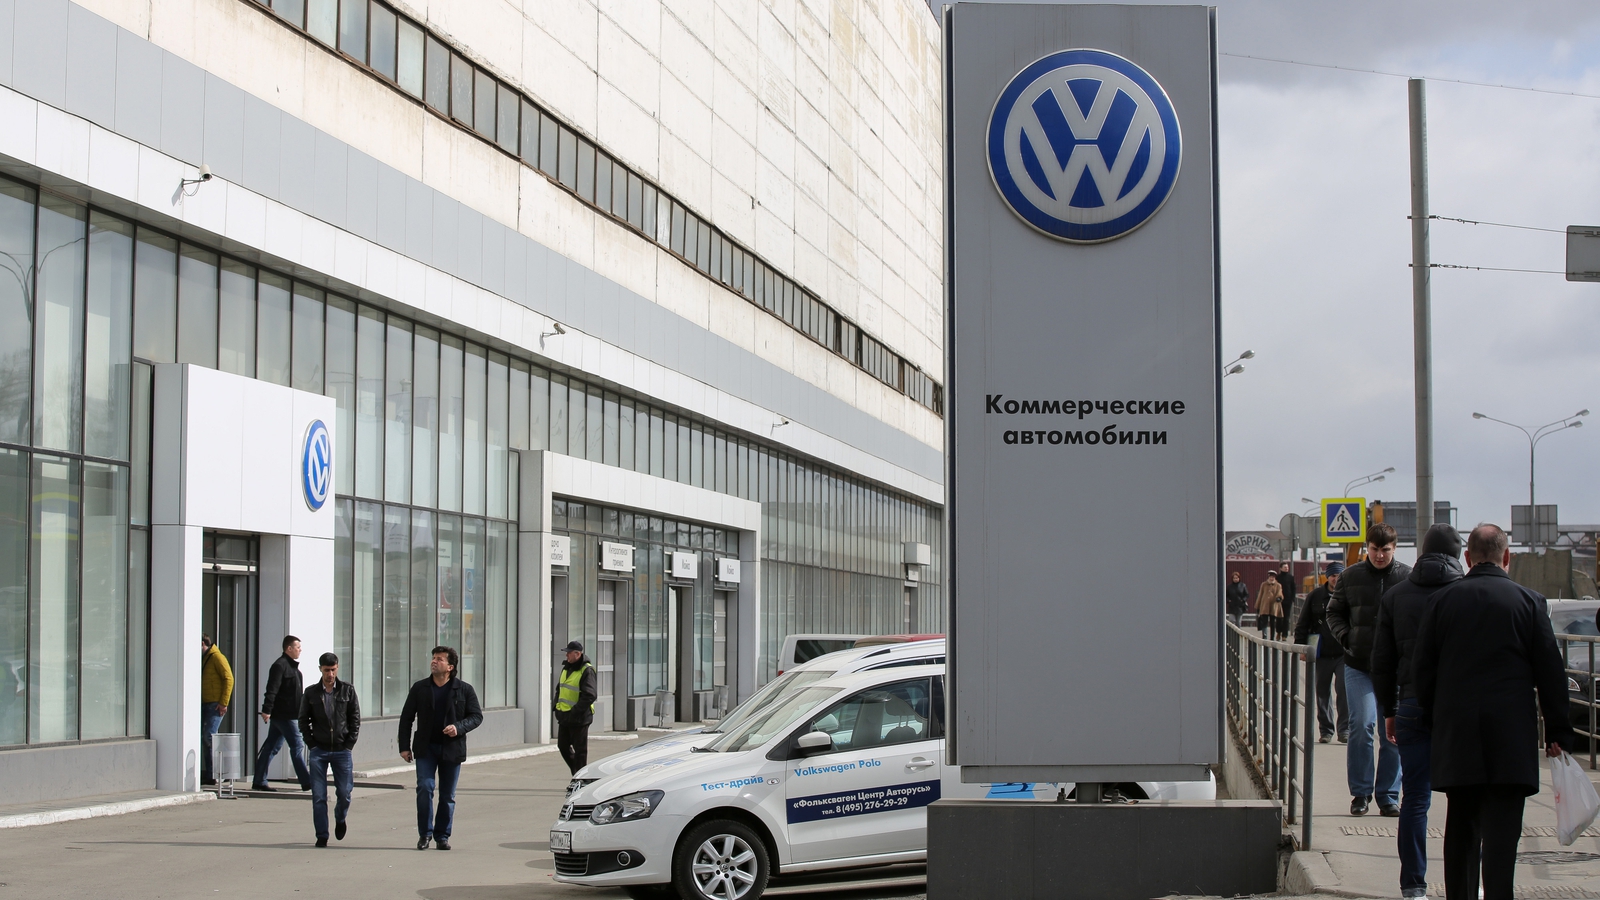 Russian court freezes Volkswagen assets in Russia